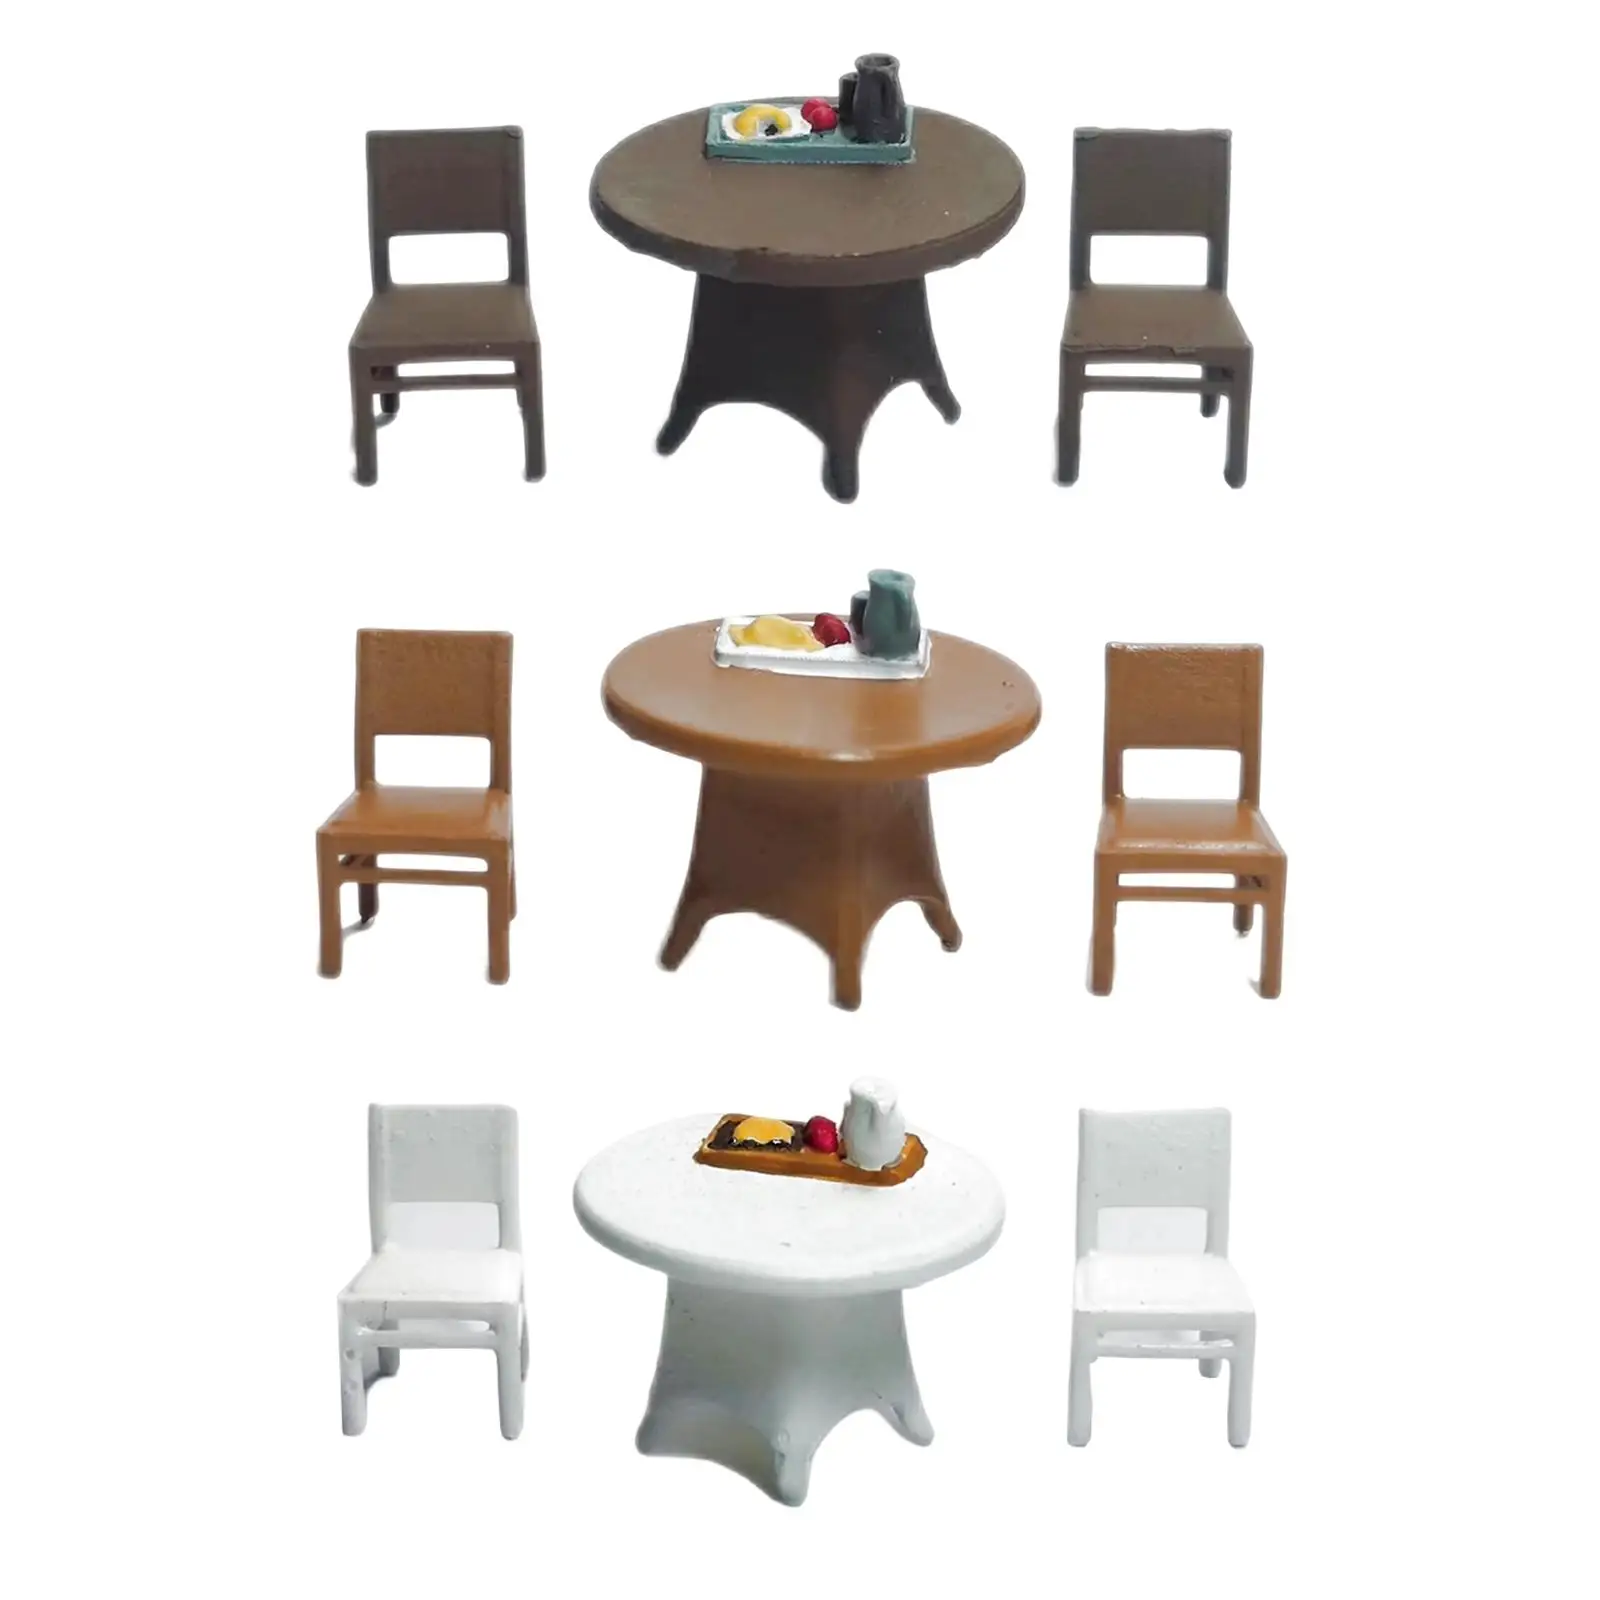 3 Pieces 1/64 Desk Chair Set Desktop Ornament Sand Table Layout Decoration Trains Architectural Miniature Resin Crafts Decor